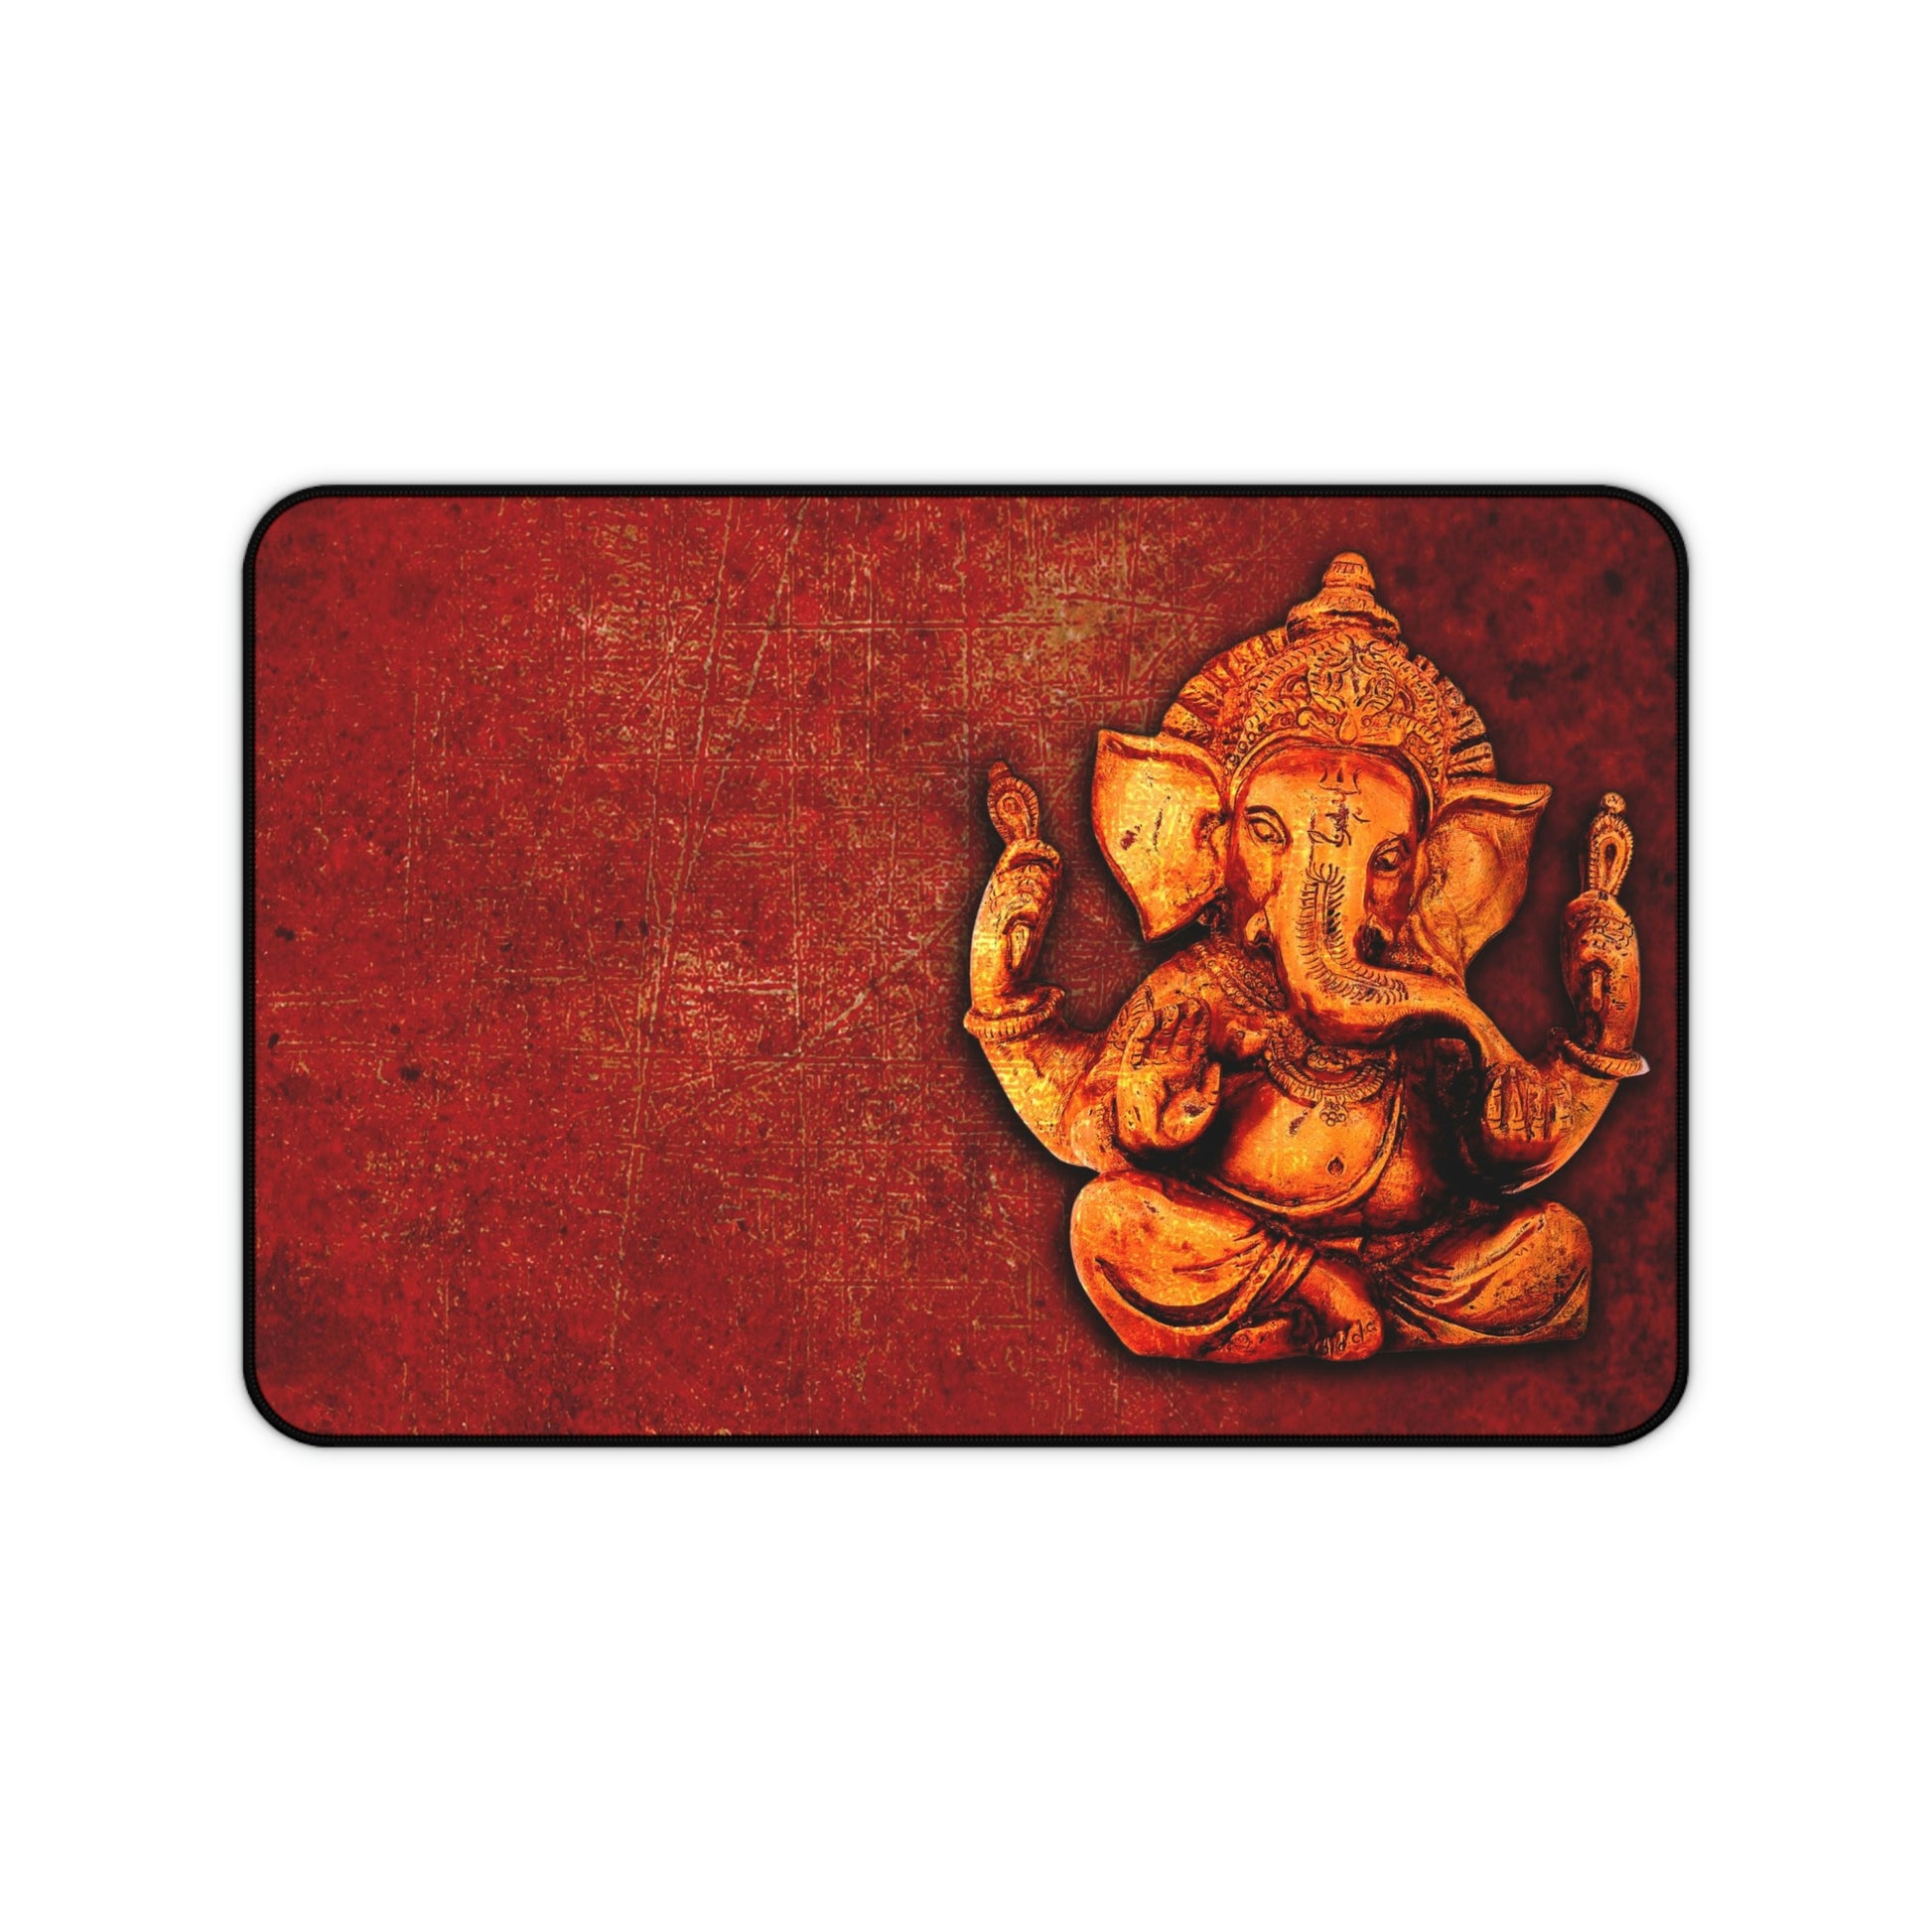 Gold Ganesha on Lava Red Background Print on Neoprene Desk Mat 12 by 18